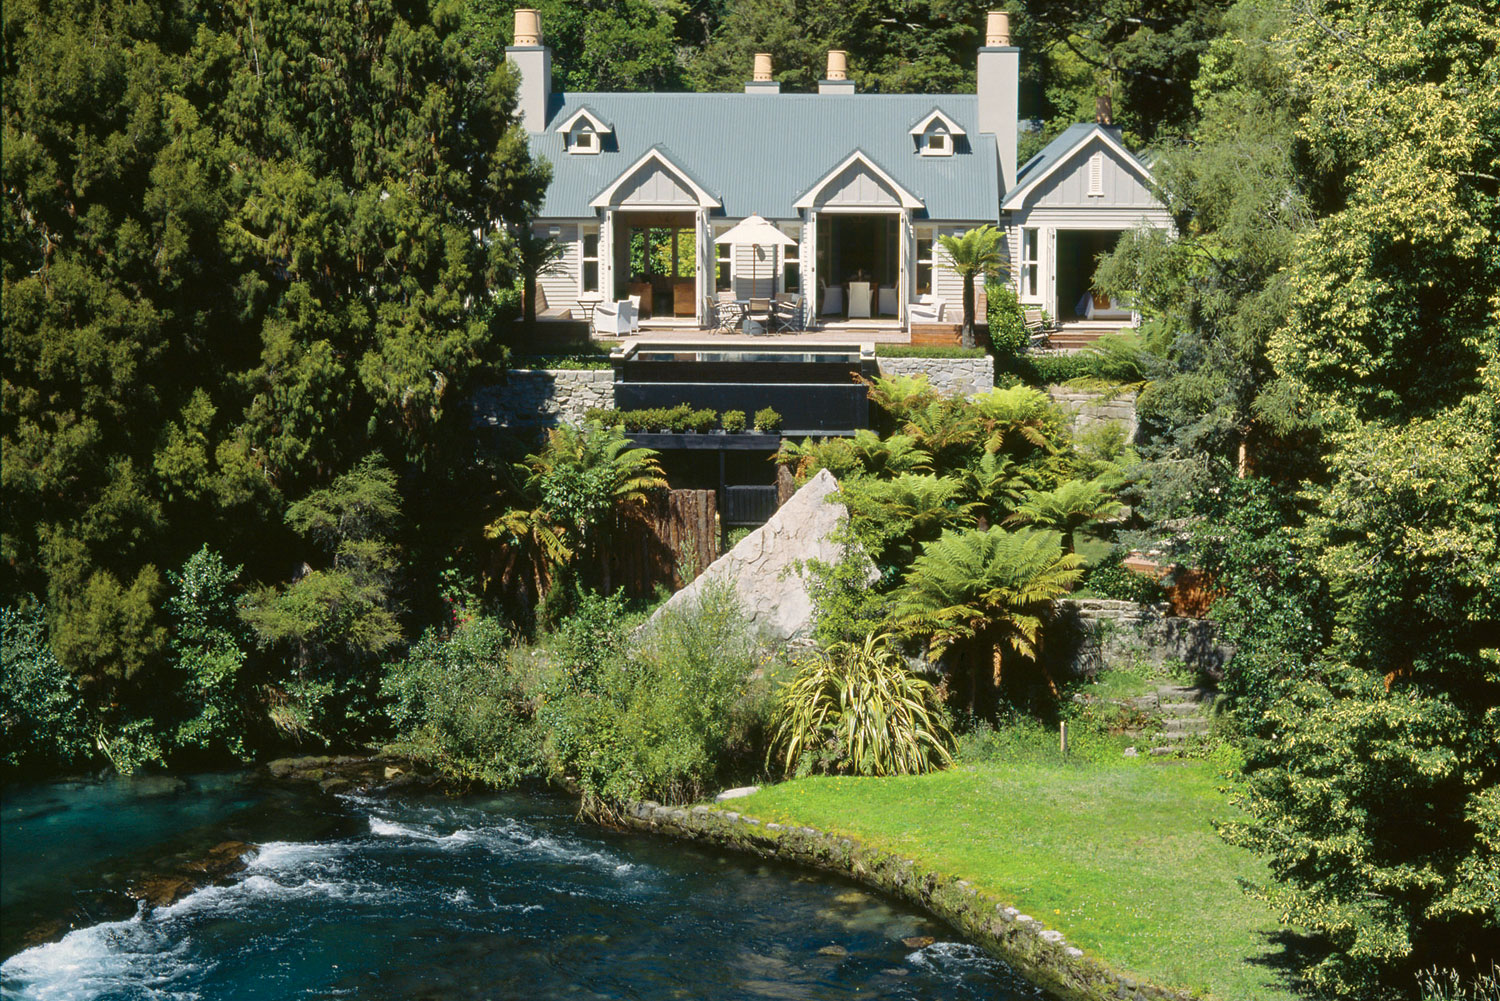 Huka Lodge in Taupo, New Zealand.